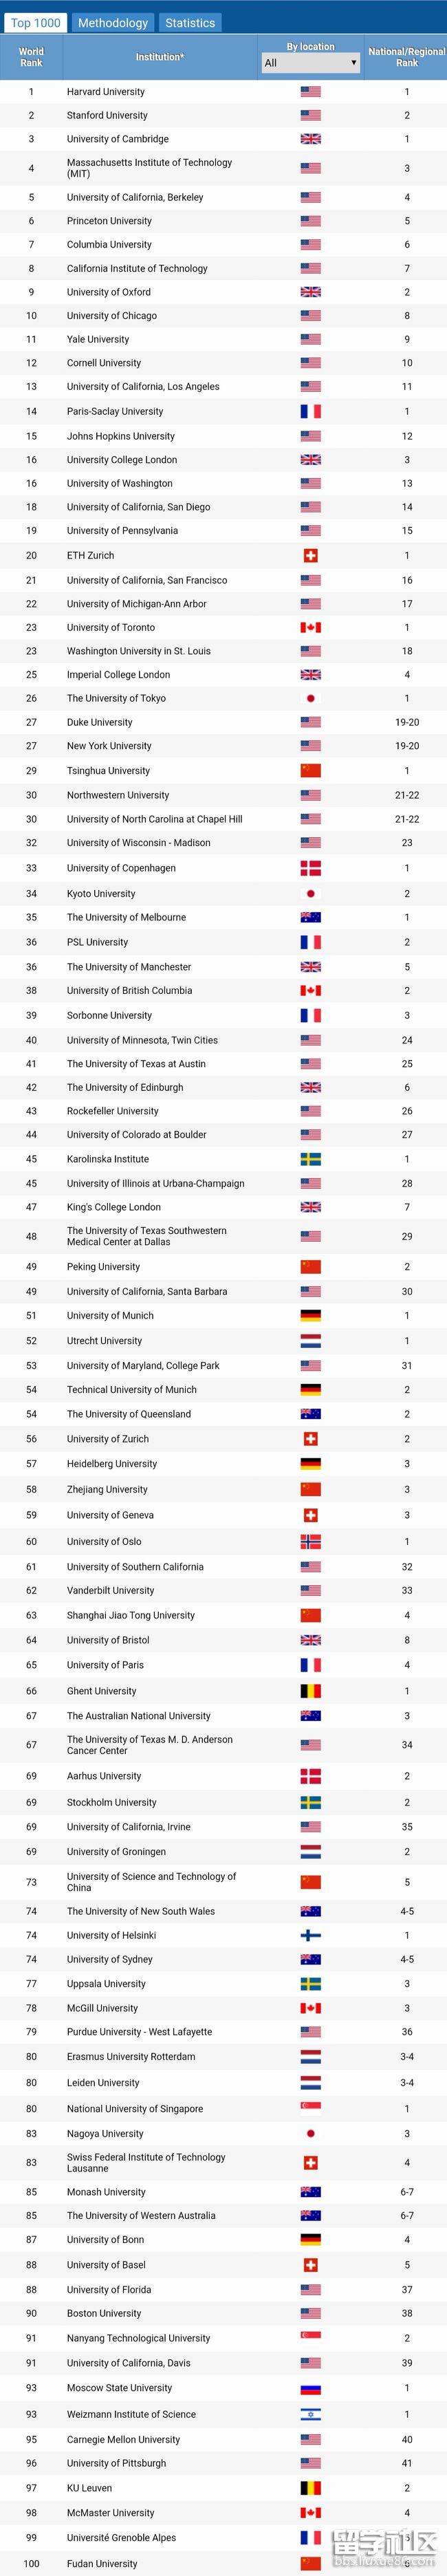 arwu世界大学学术排名2021年